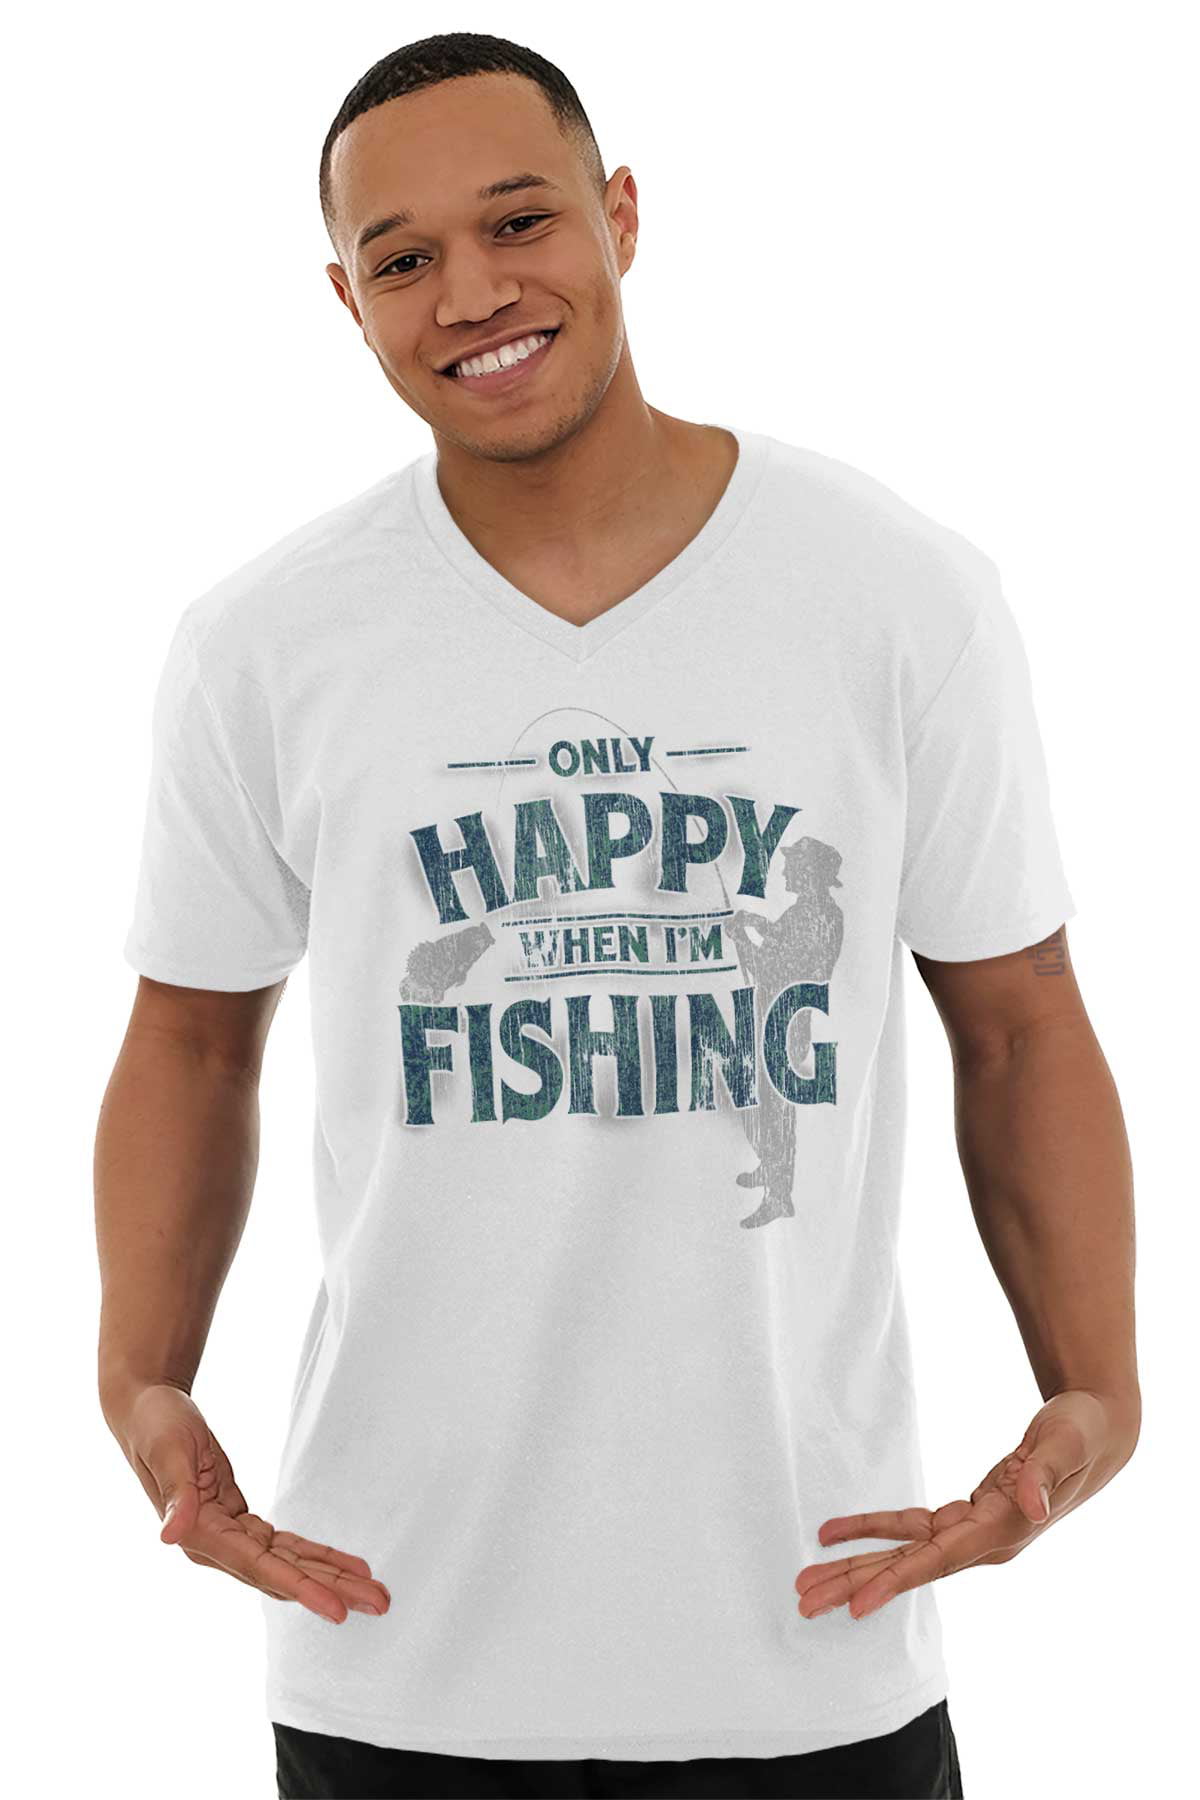 Fishing T-Shirt Funny Novelty Mens tee TShirt Caught Sod All Fishing Club 